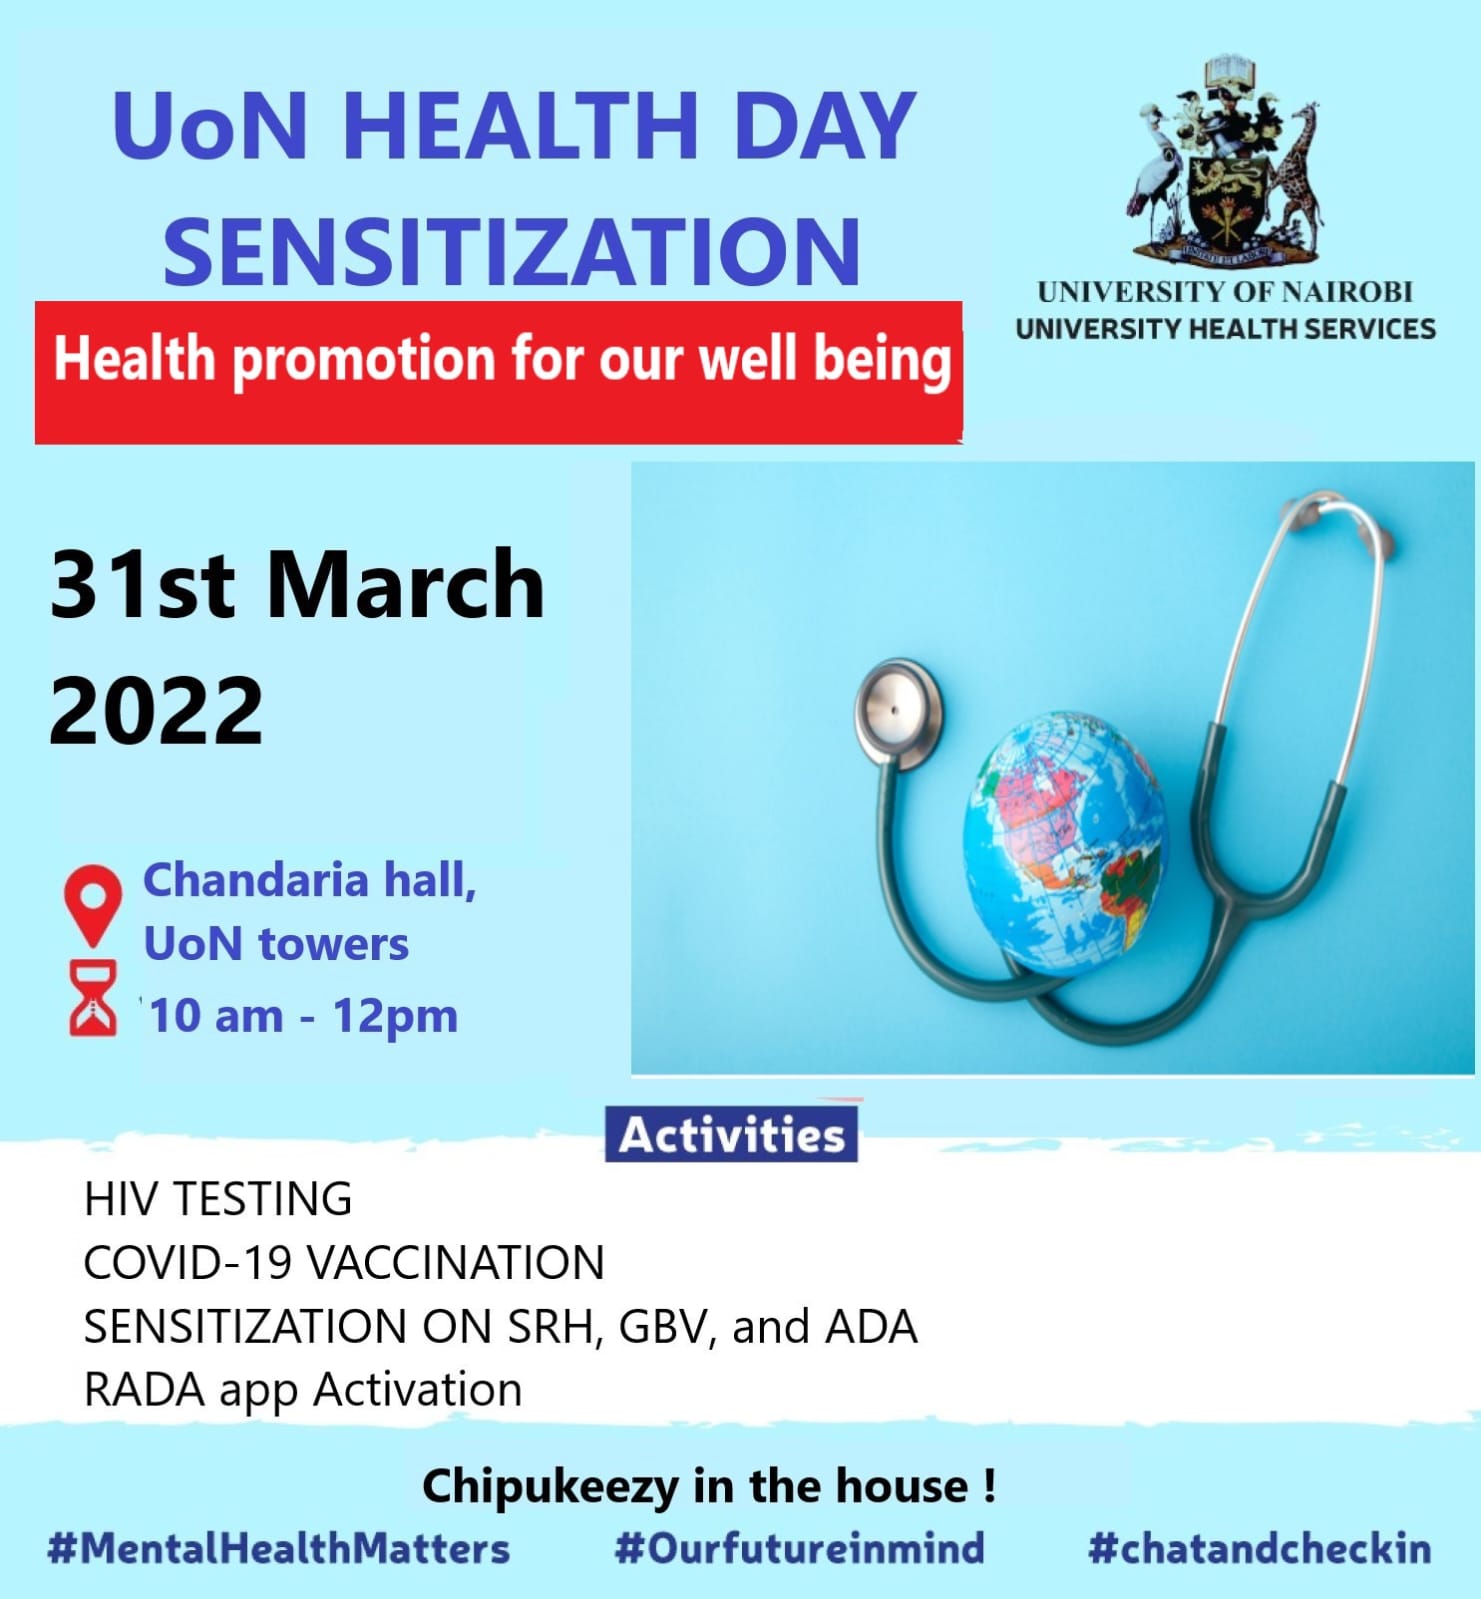 UoN Health Day